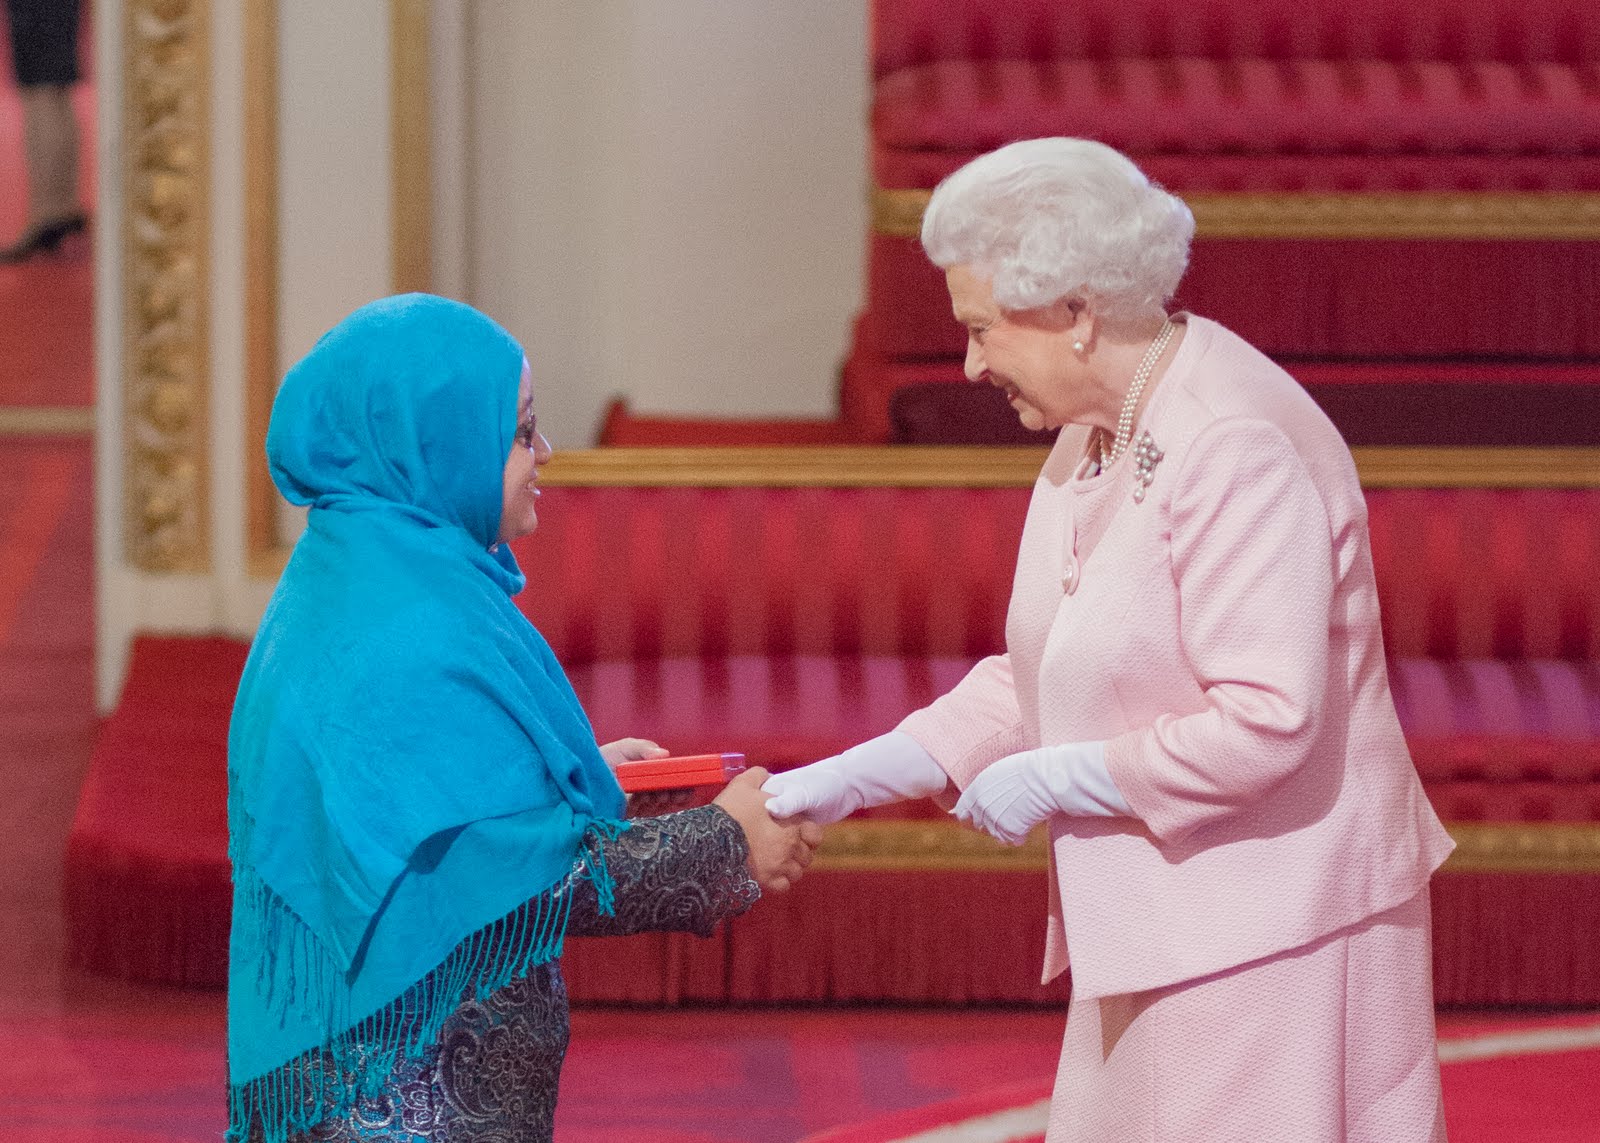 Khairunnisa Ash’ari 2015 Queen's Young Leader from Brunei Darussalam